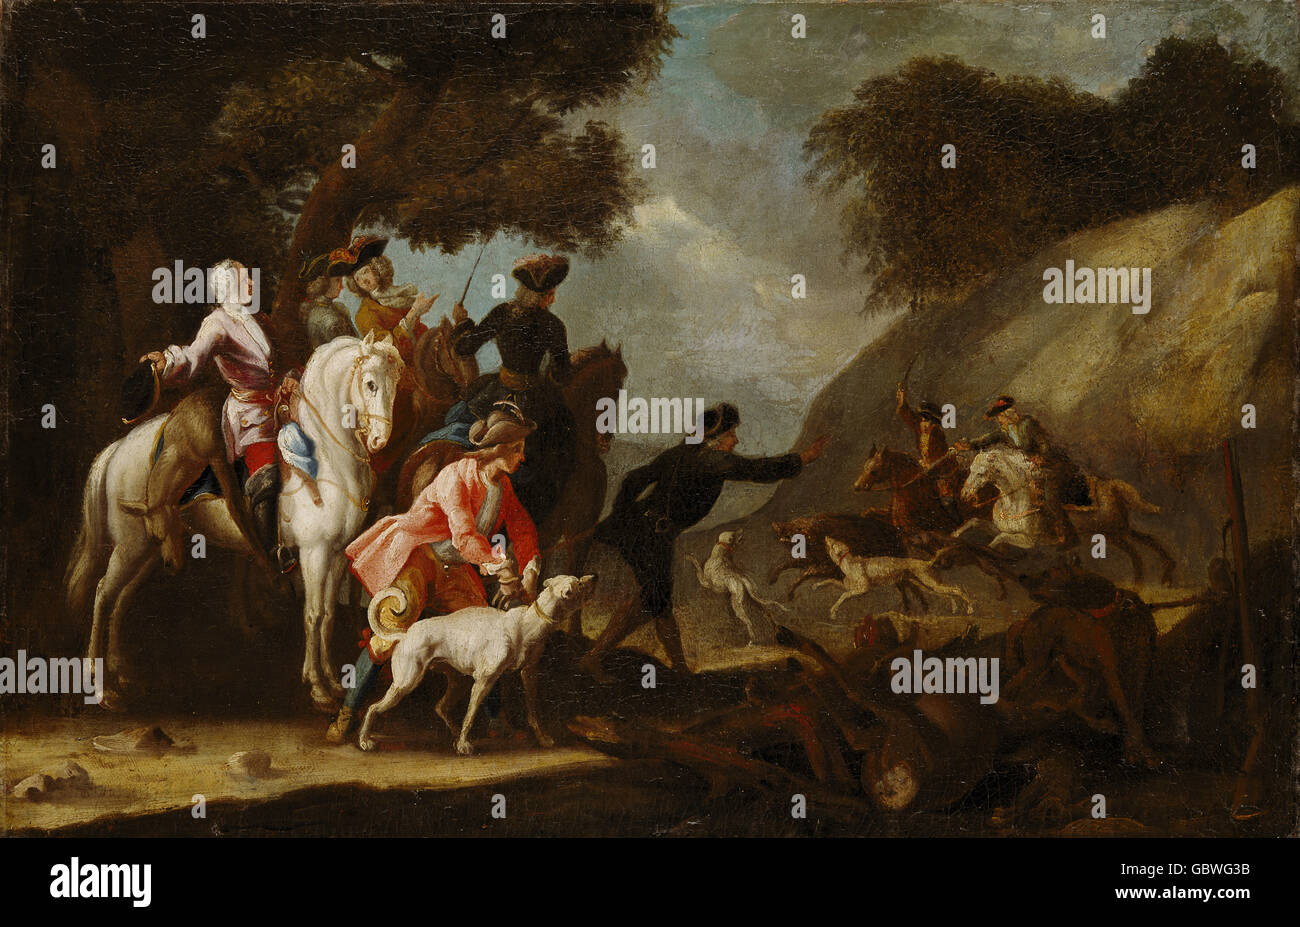 Caccia, cinghiali, corteggiamento, caccia a un cinghiale, pittura, maestro della Germania meridionale, circa 1750, diritti aggiuntivi-clearences-non disponibile Foto Stock